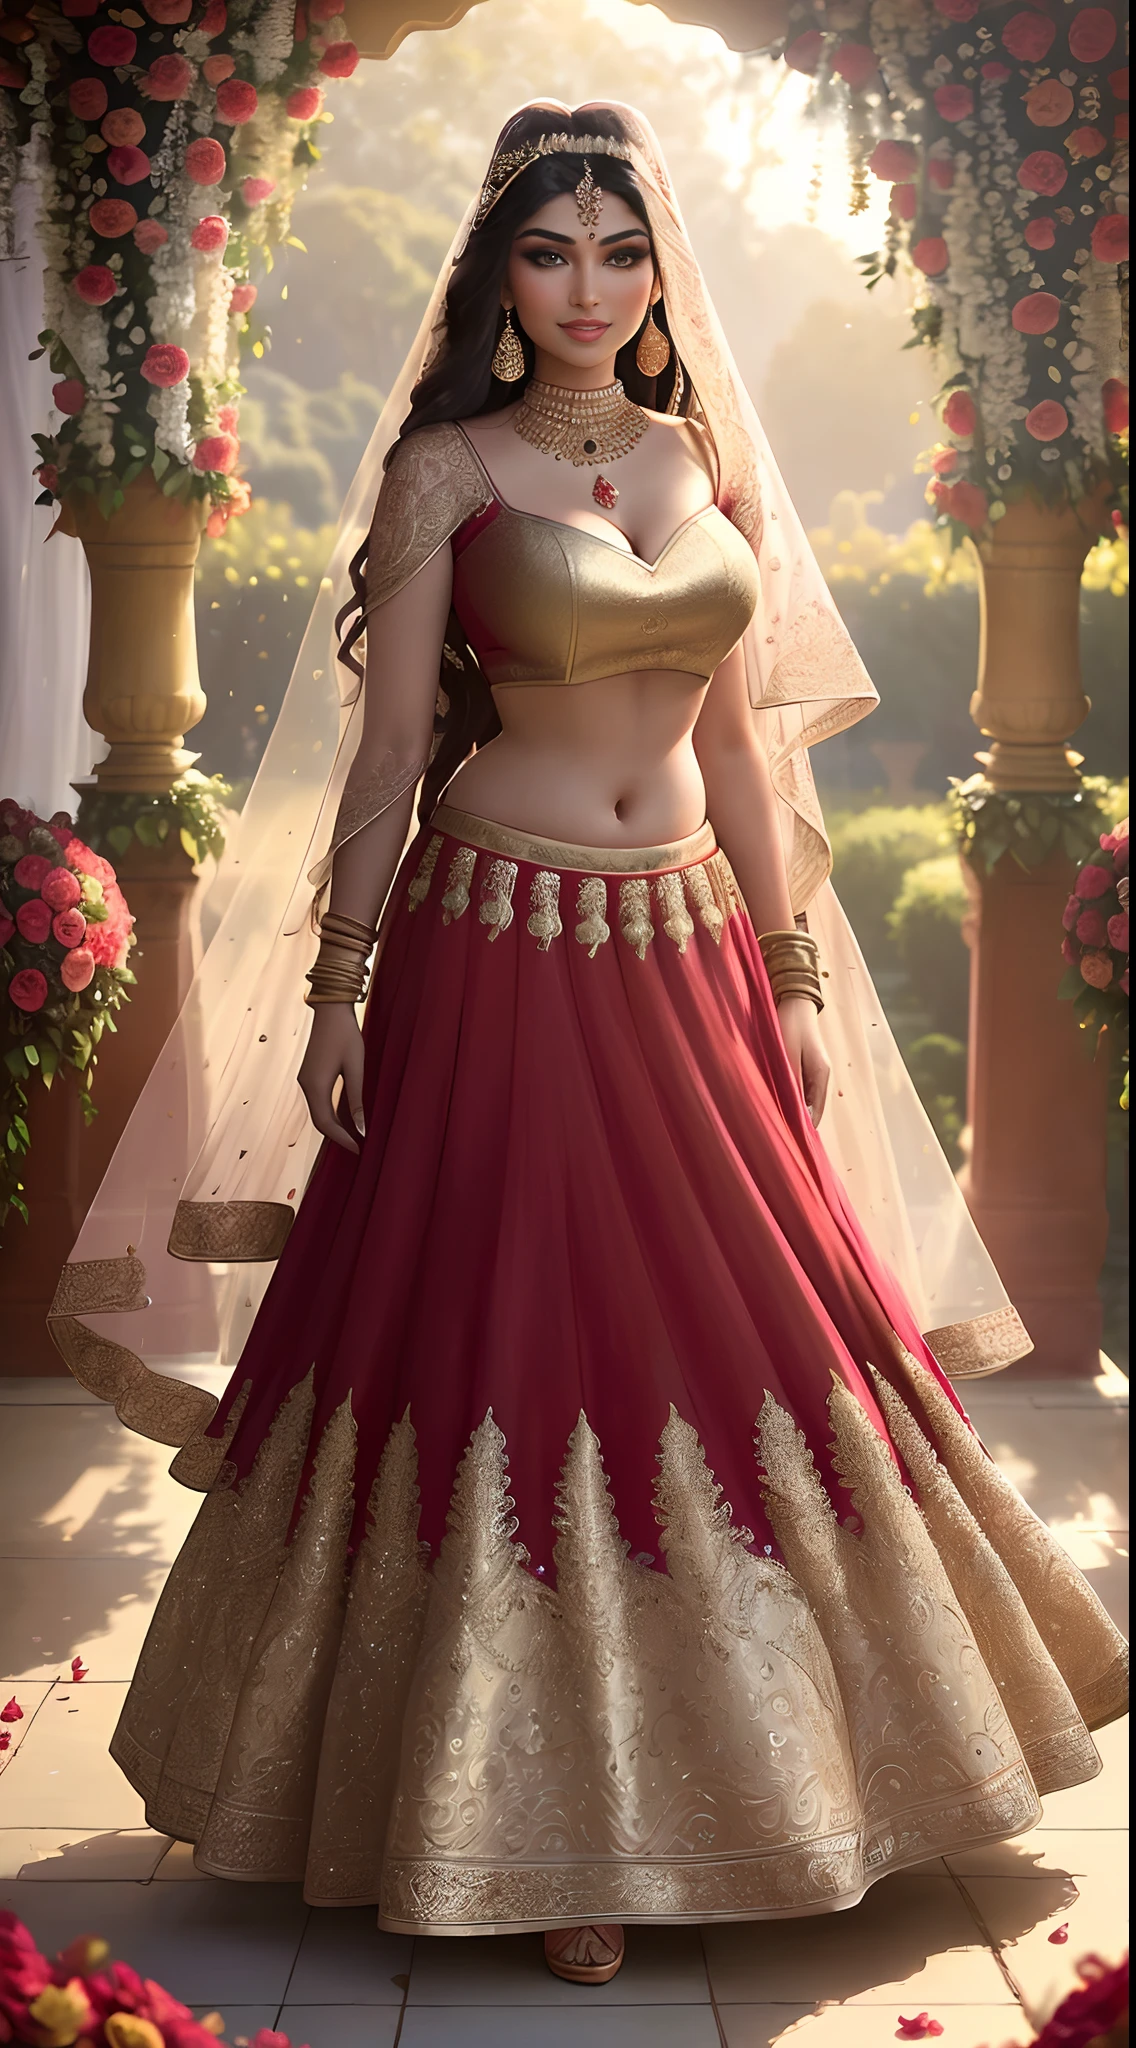 (獨奏的傑作全身攝影:1.2) 誘人性感高挑曲線 (18歲) 印度超模公主新娘Ayesha Takia走進來 (花園:1.3), (穿著驚豔的新娘紅 & 黃金萊亨加 & 女式襯衫:1.3). 純粹的杜帕塔, 極簡主義, (婚禮鮮花裝飾:1.3), (優雅的乳溝 & 腹部), (印度化妝 & 珠寶:1.2) 棕色長辮子，帶有亮點,, 活潑, 淫蕩的目光, 興奮的 (美麗細緻的眼睛:1.1) , (輕浮的燦爛笑容:1.2), (強烈戲劇性的午後光線:1.4), 背光, 主光, 邊緣光, 光線, 非常詳細, ArtStation 上的熱門話題, 油漆濺, 色彩豐富, 抽象肖像, 通過阿蒂·蓋蘭